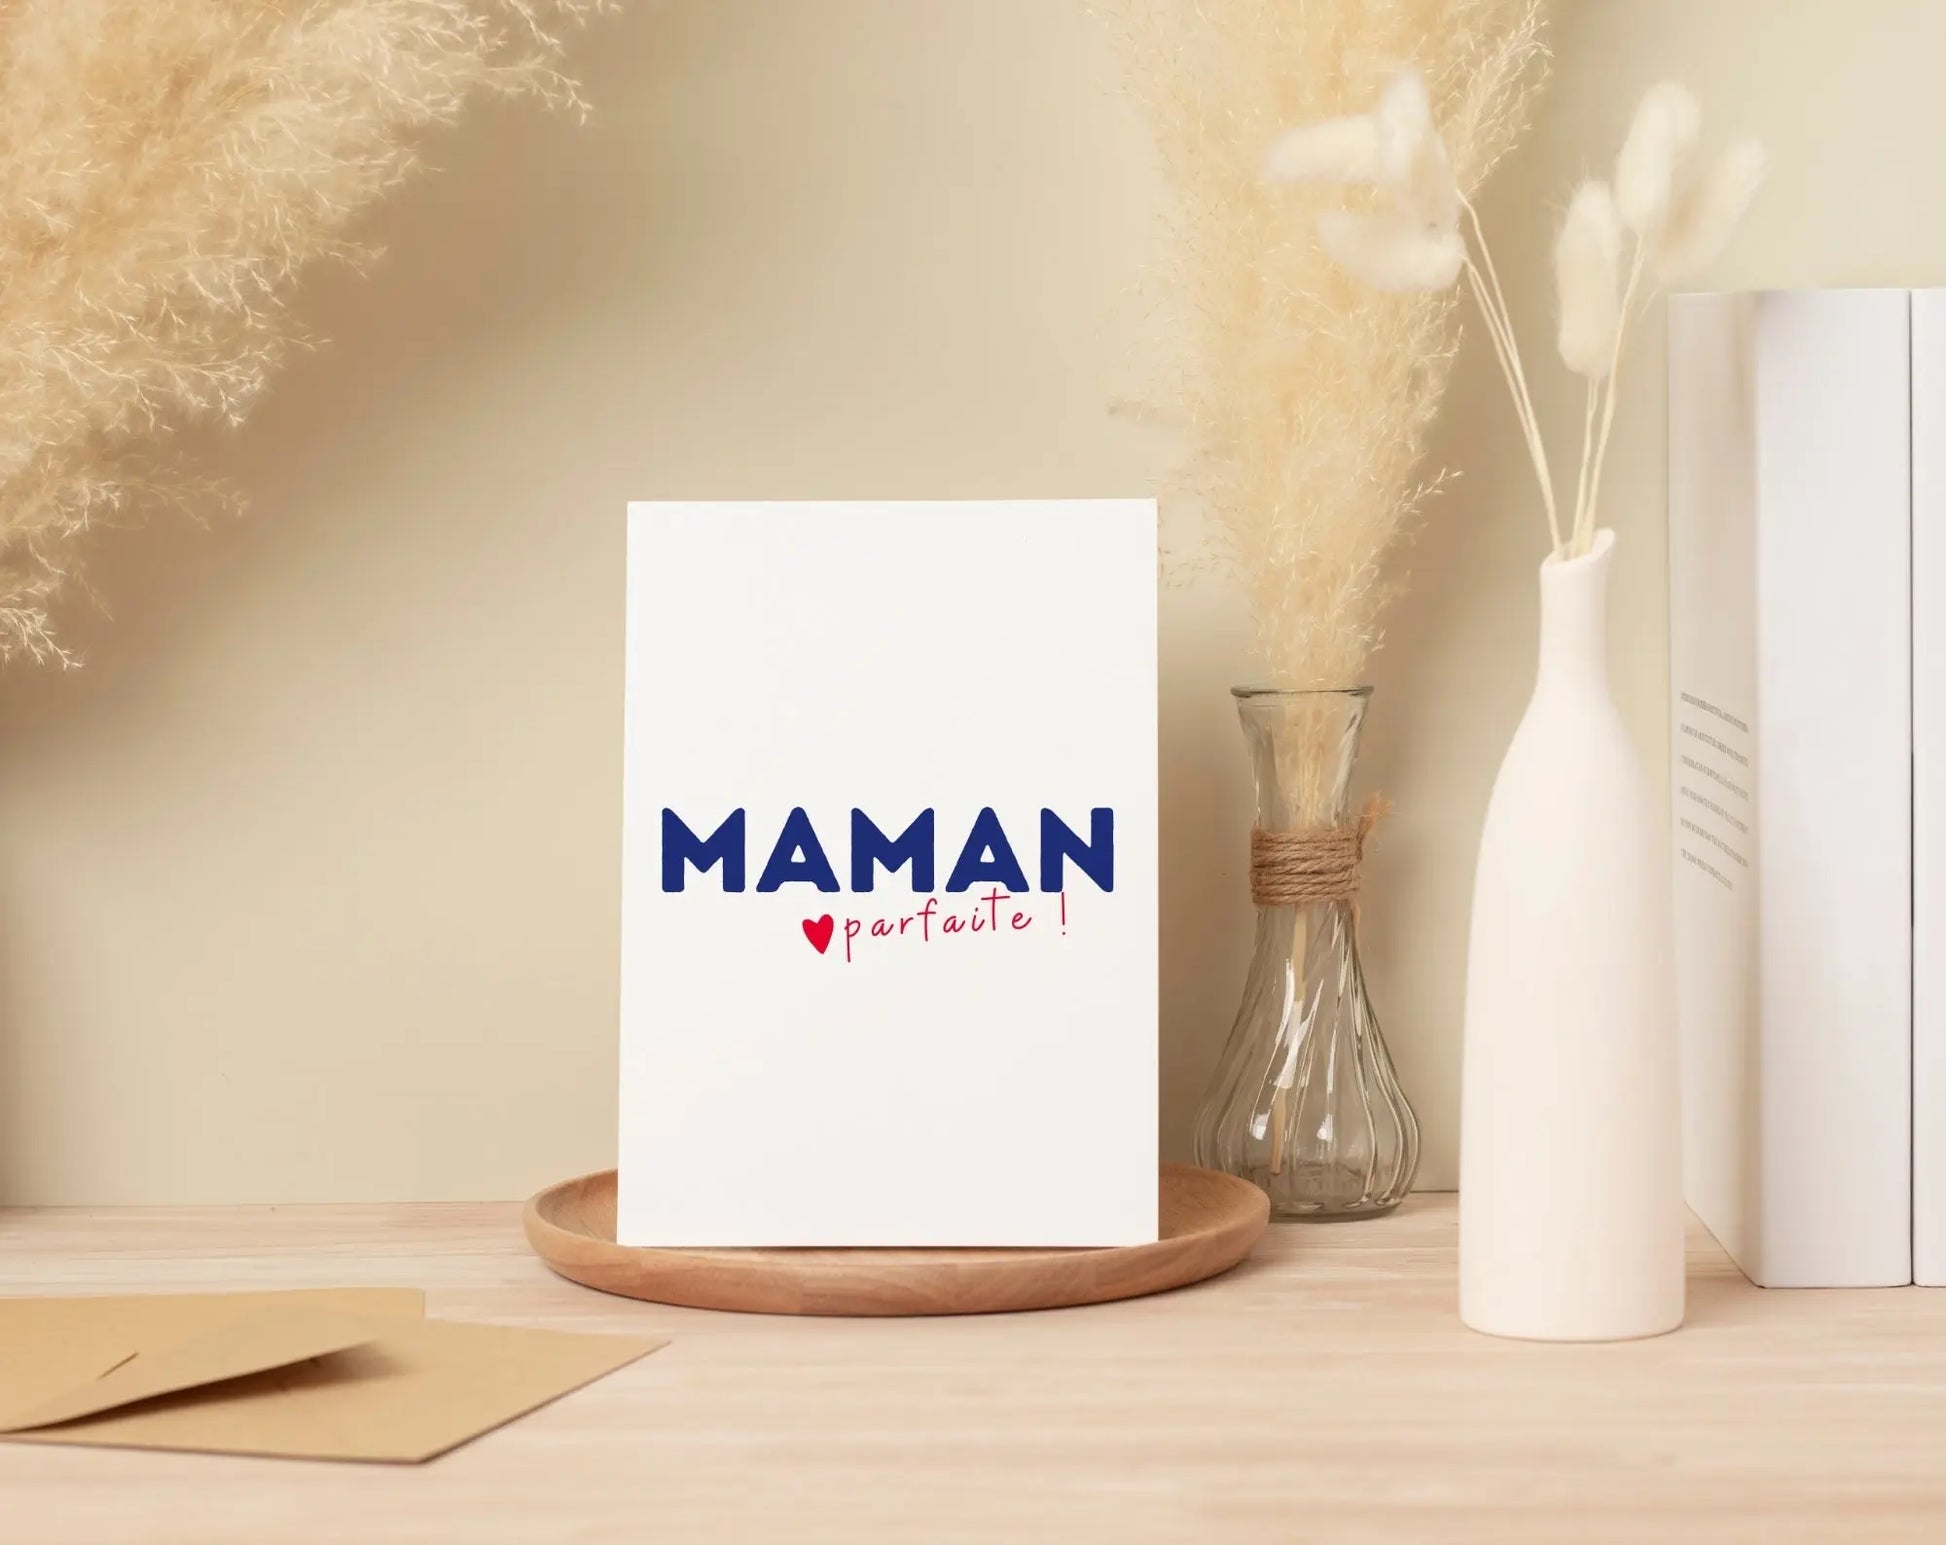 Affiche Maman parfaite - Cadeau Fête des mères FLTMfrance